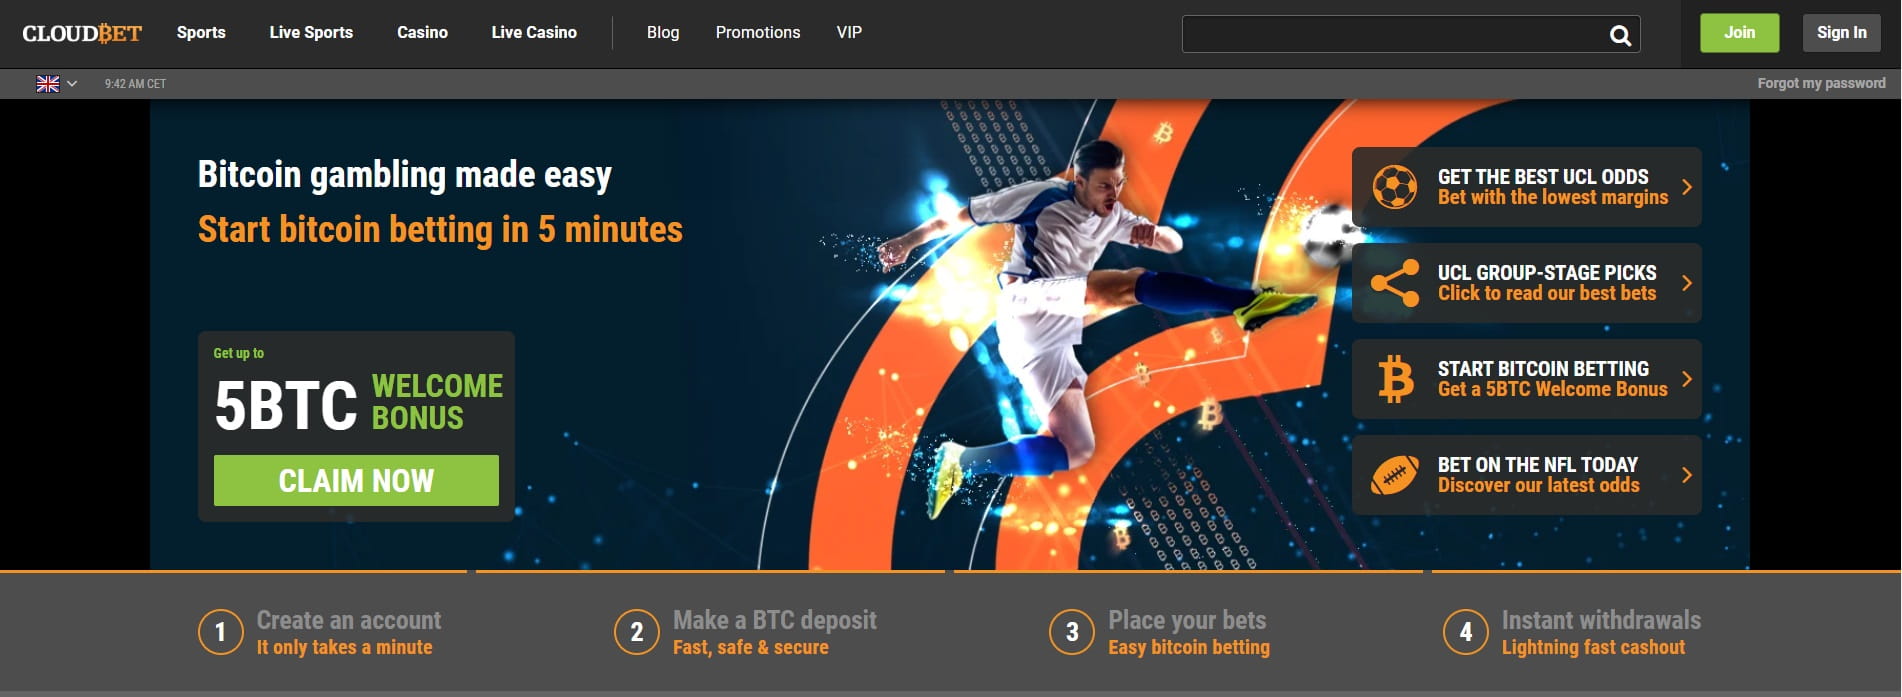 Die Homepage des Cloudbet Casino mit Bonus